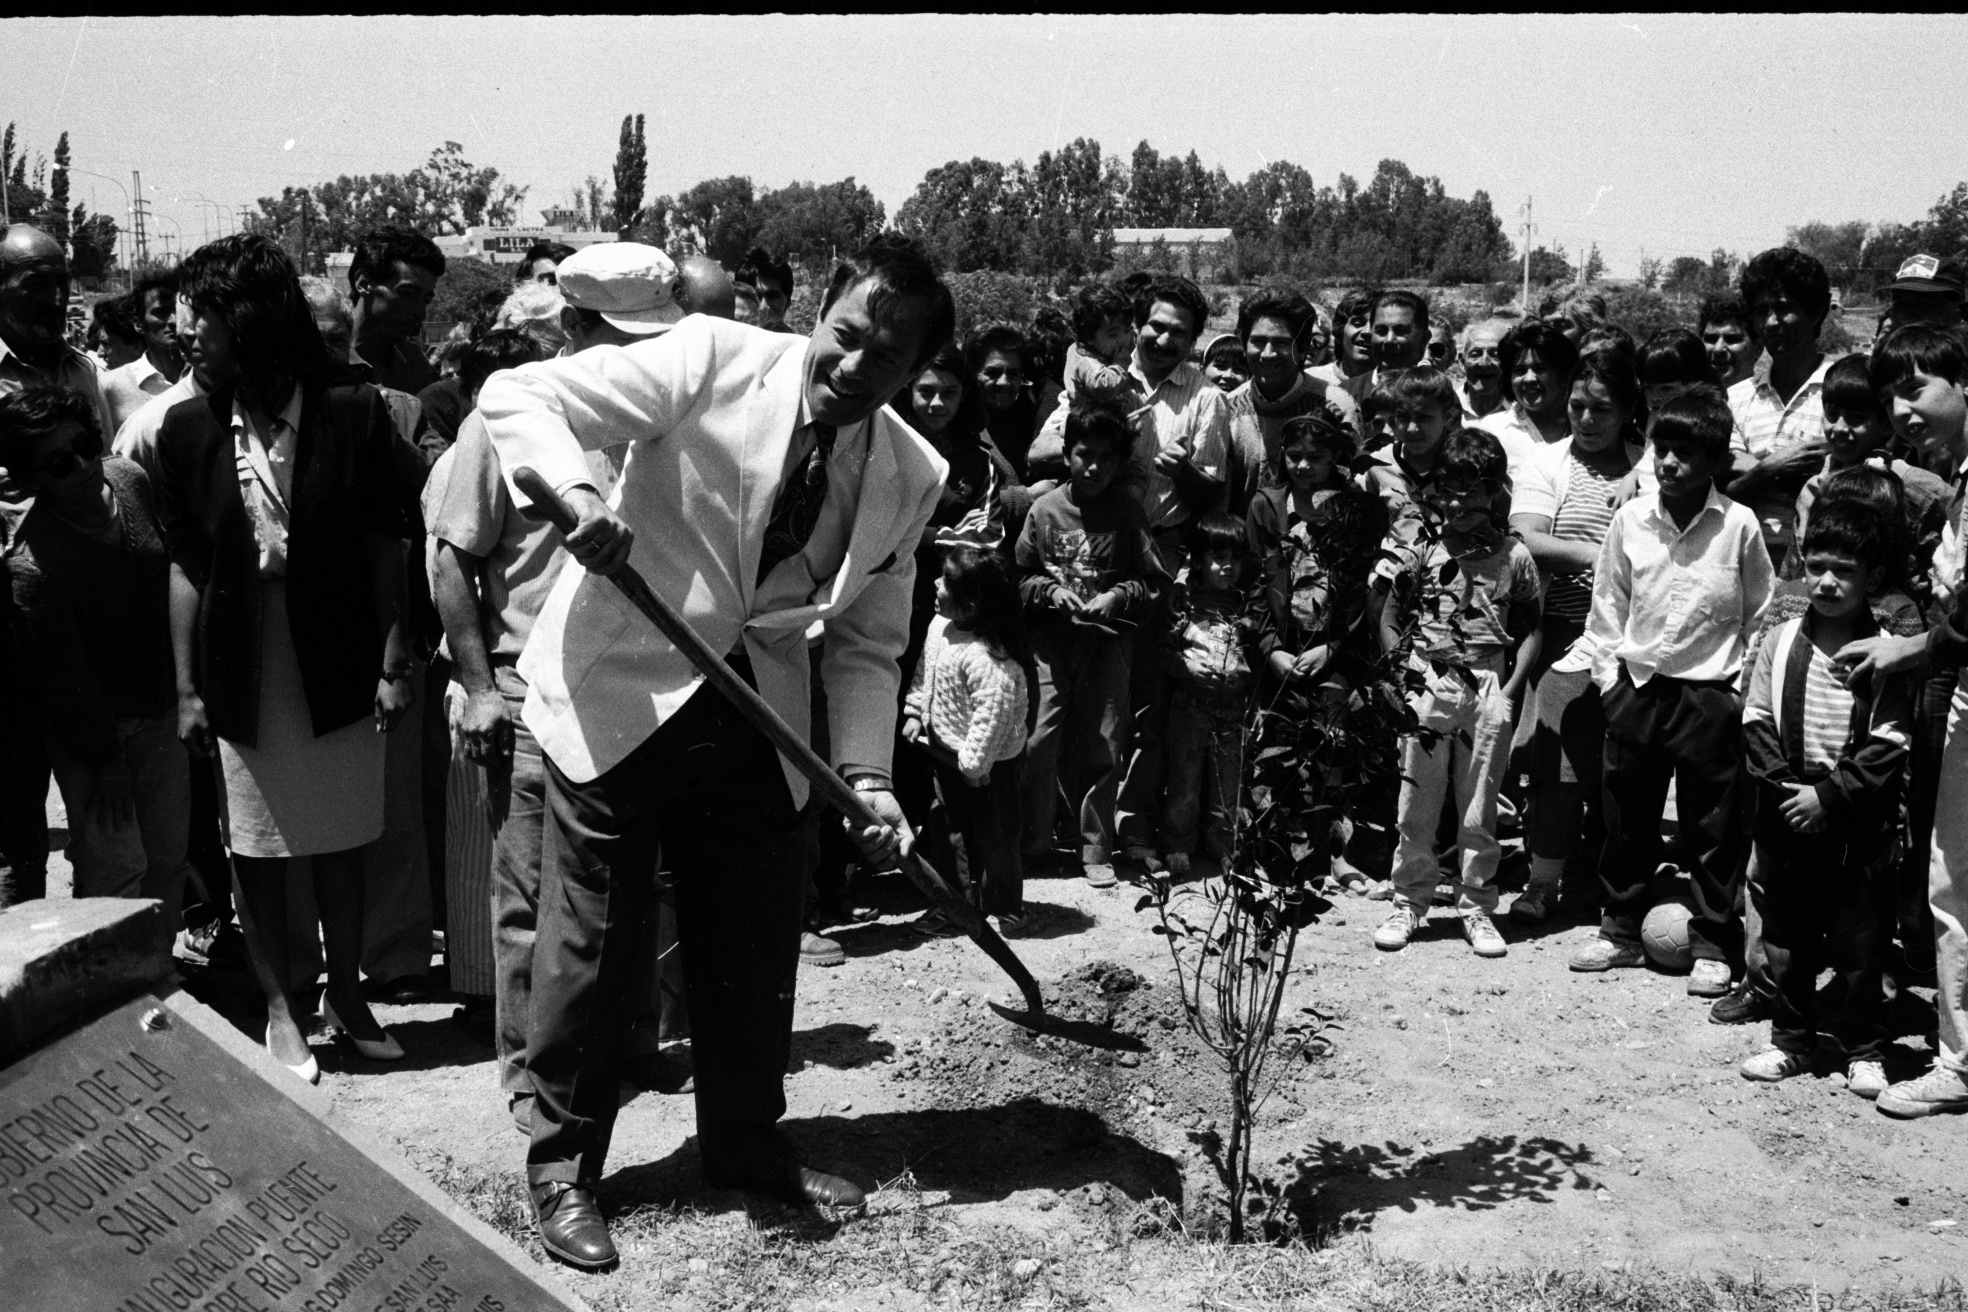 11-12-91. Puente sobre el Río San Luis. El gobernador planta un árbol durante la inauguración de la obra en la zona sur de la ciudad de San Luis.